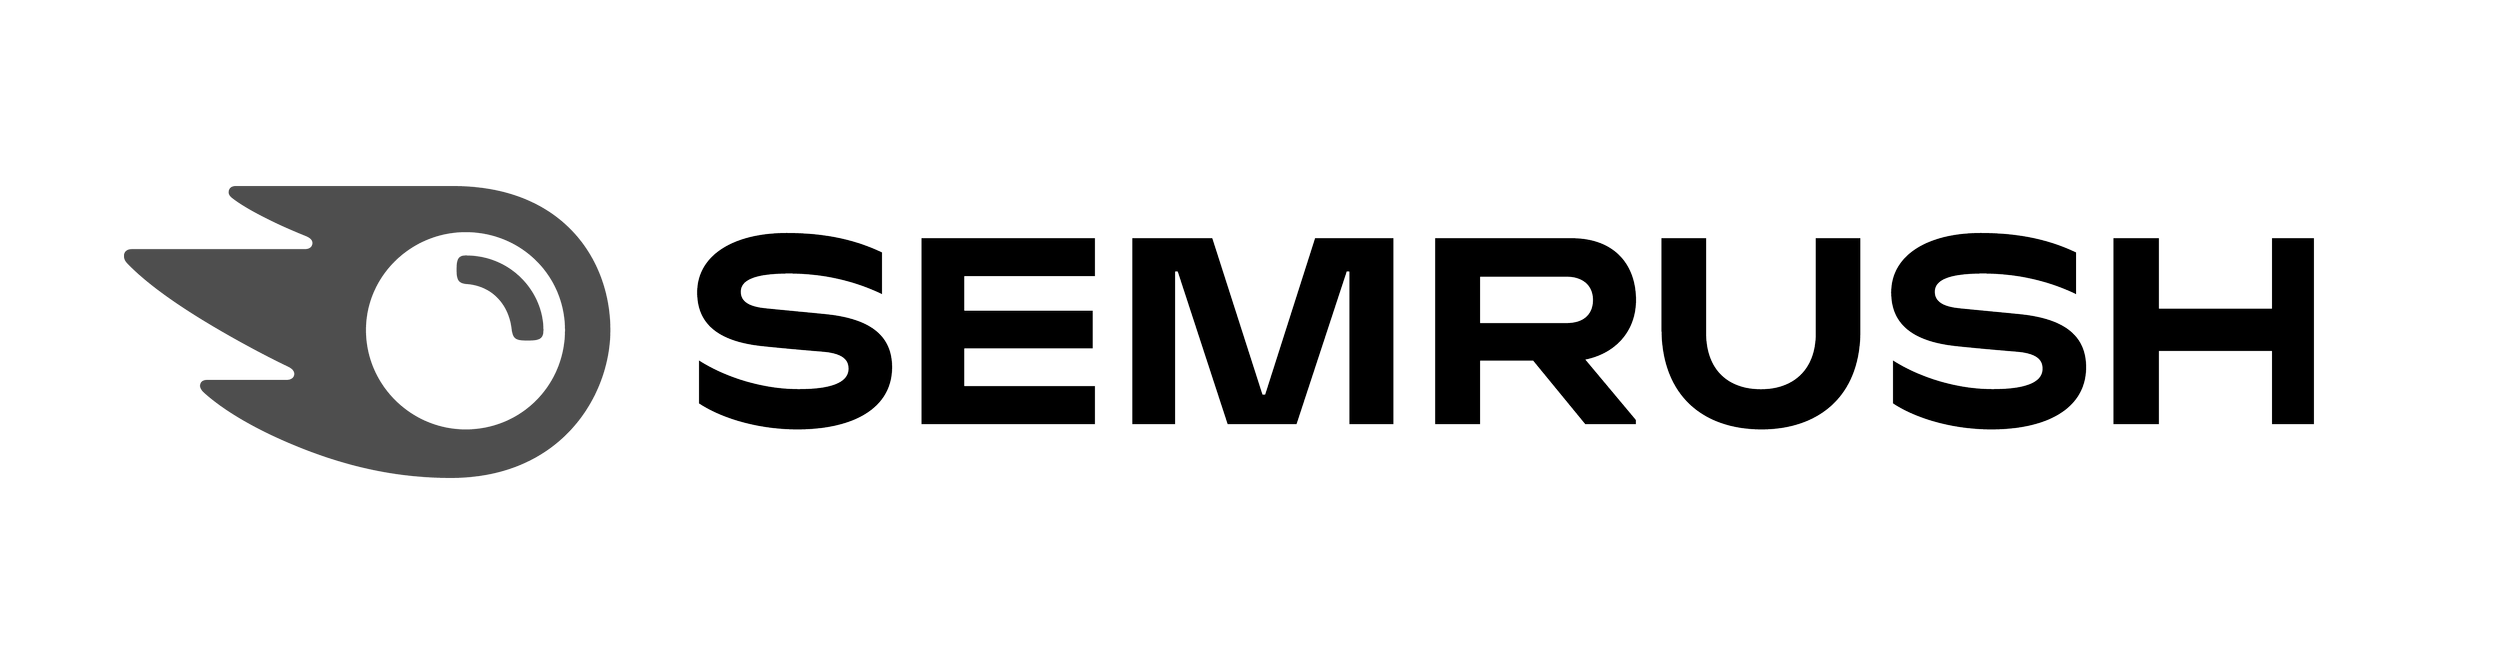 Semrush-logo.png